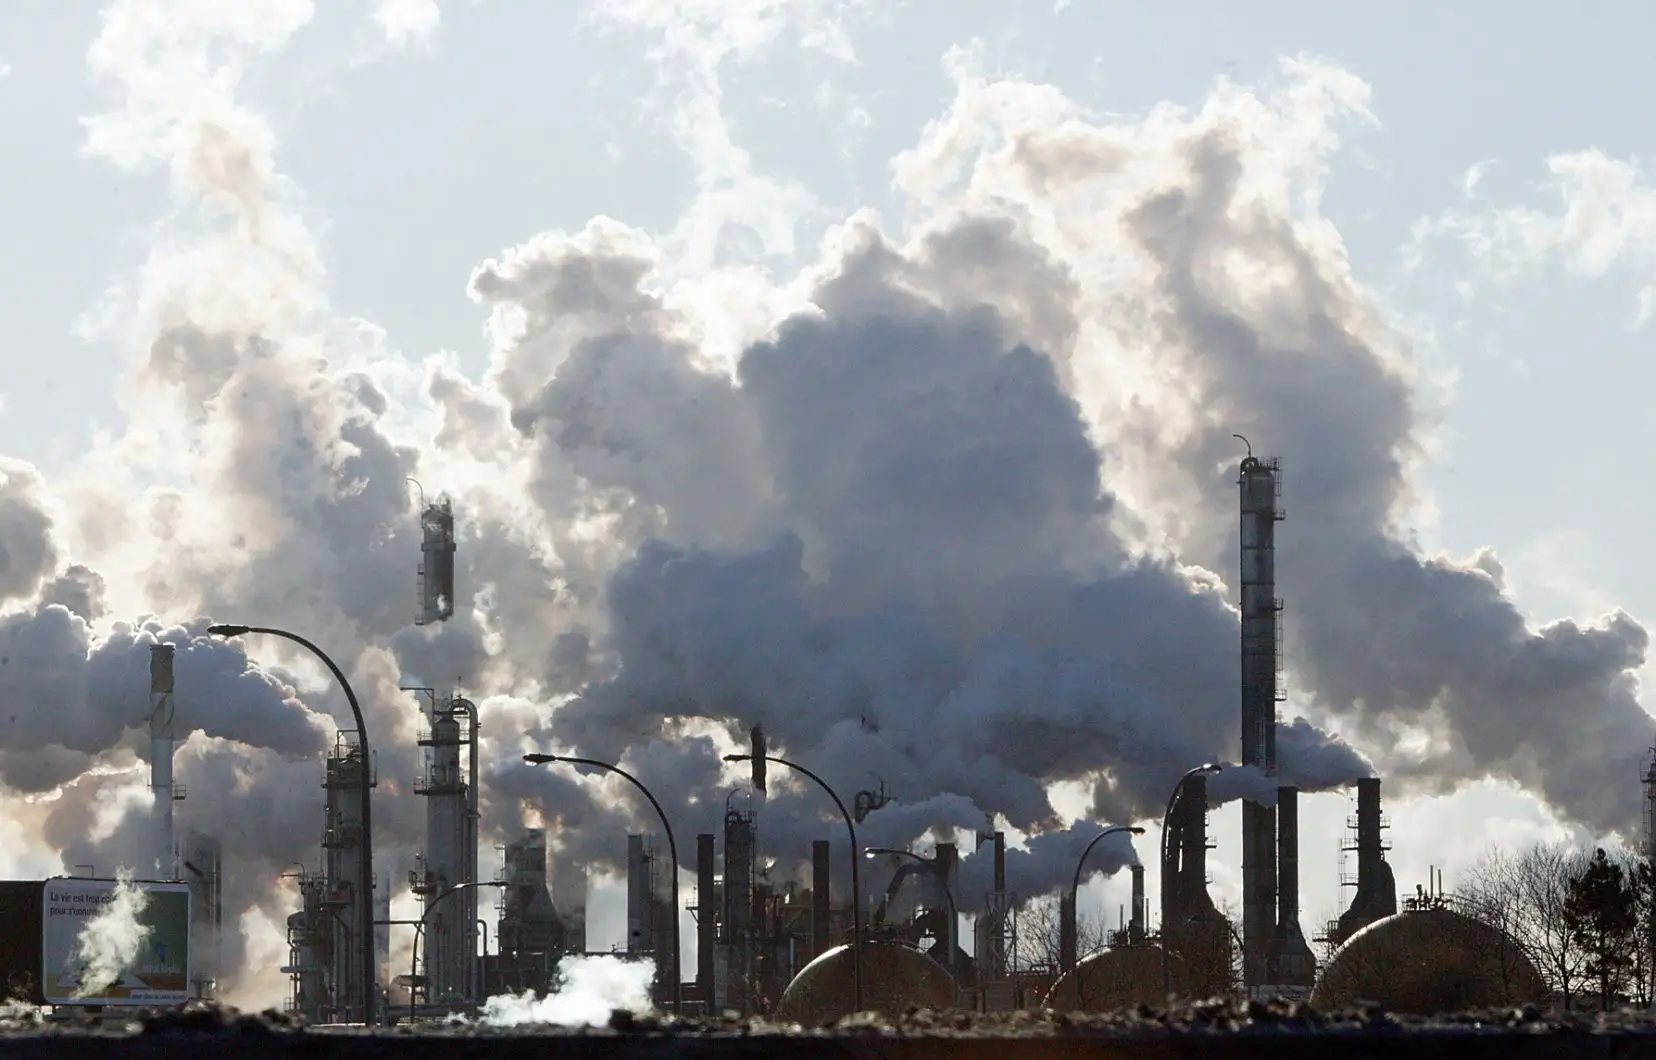 خبراء ينددون بالاعتماد على الطاقة الأحفورية المسؤولة عن اختلالات المناخية والمهددة للصحة